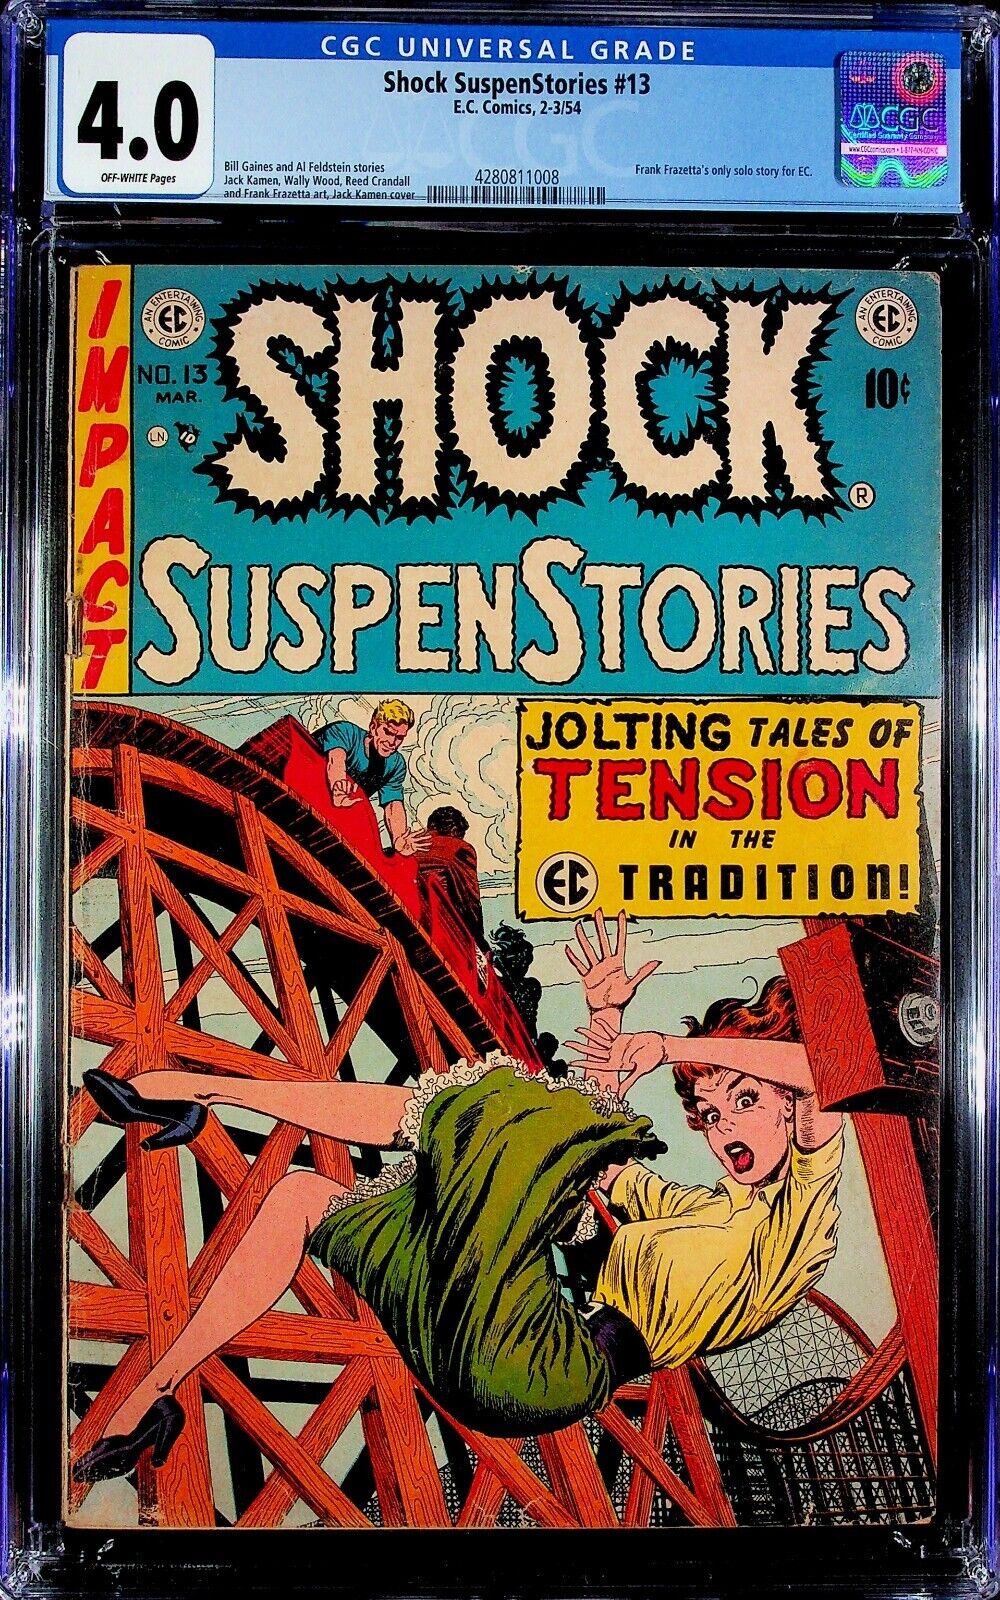 Shock SuspenStories #13 CGC 4.0 Jack Kamen Cover, Frank Frazetta Art, EC 1954